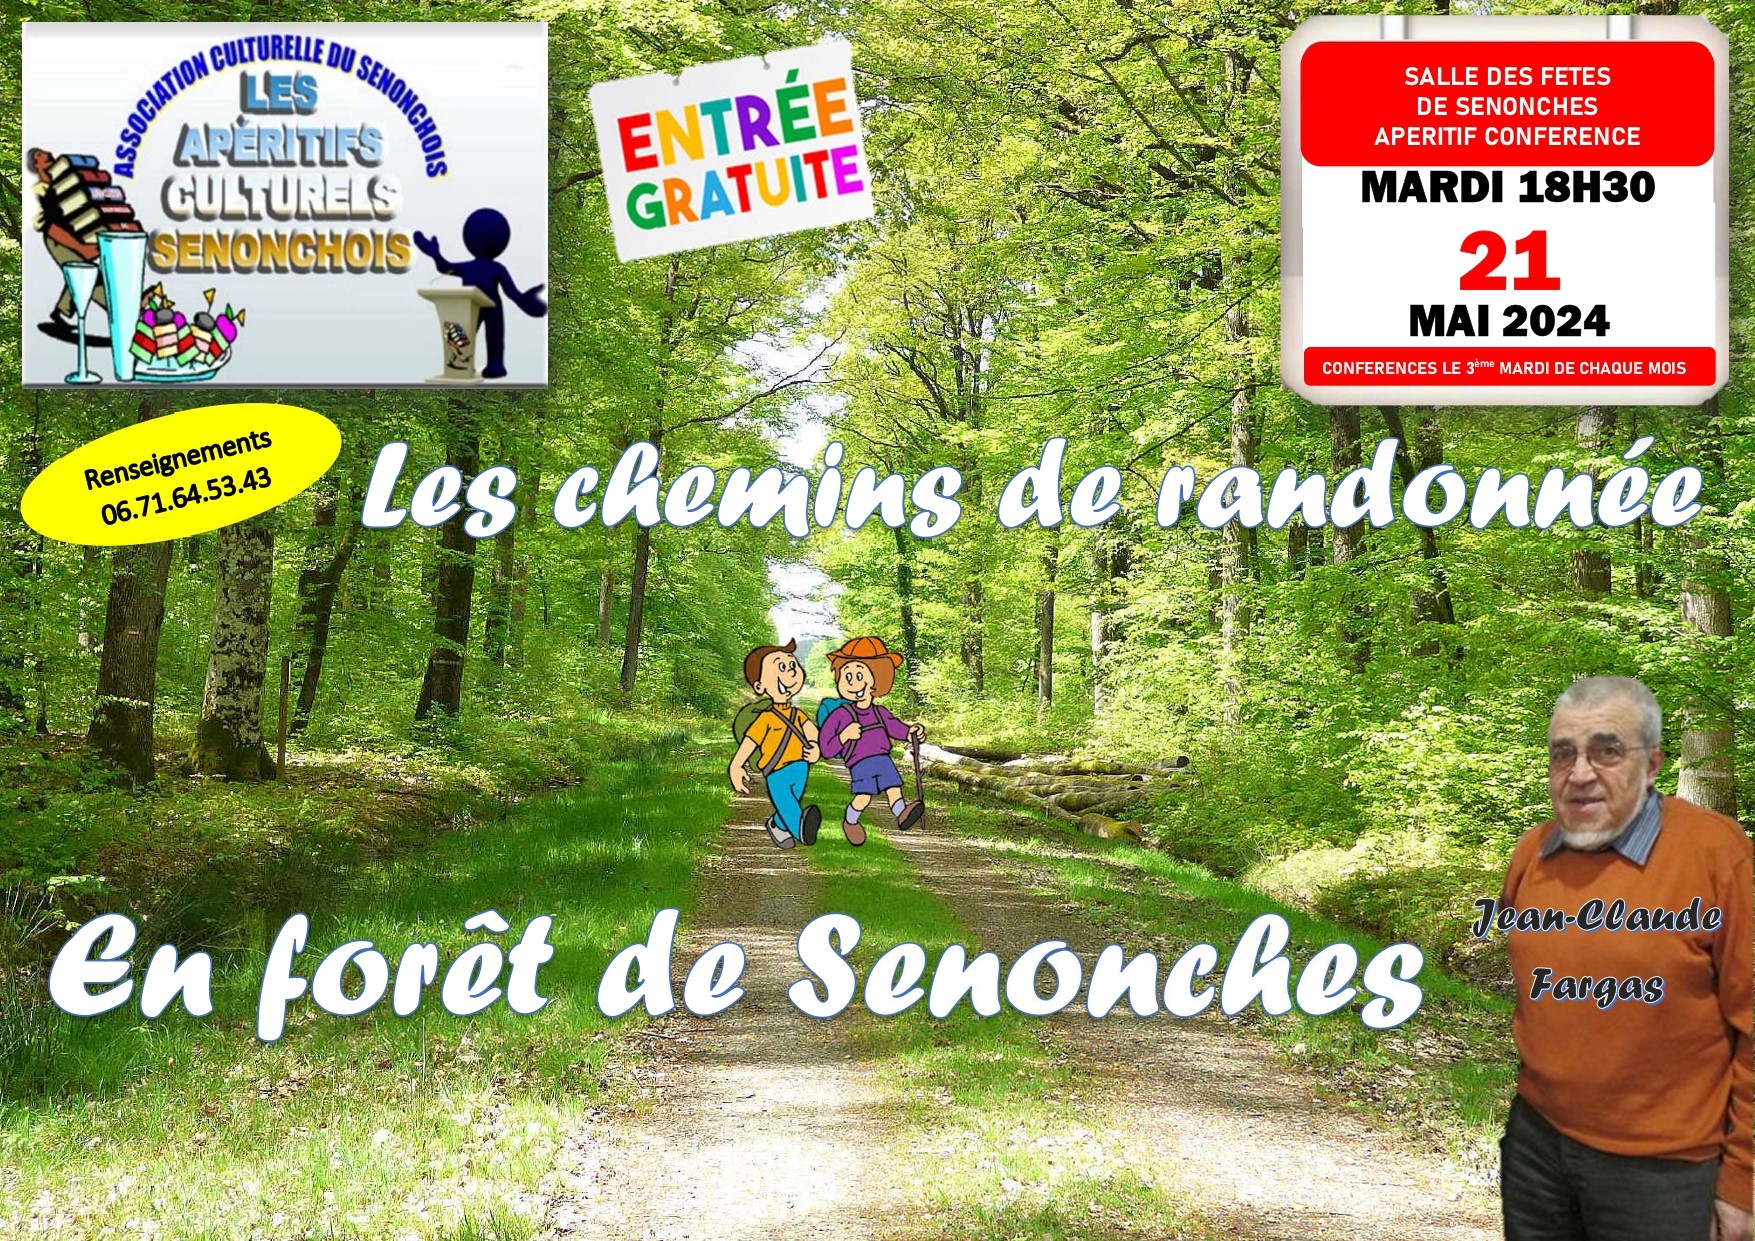 Apéritif conférence - Les chemins de randonnées en forêt de Senonches null France null null null null